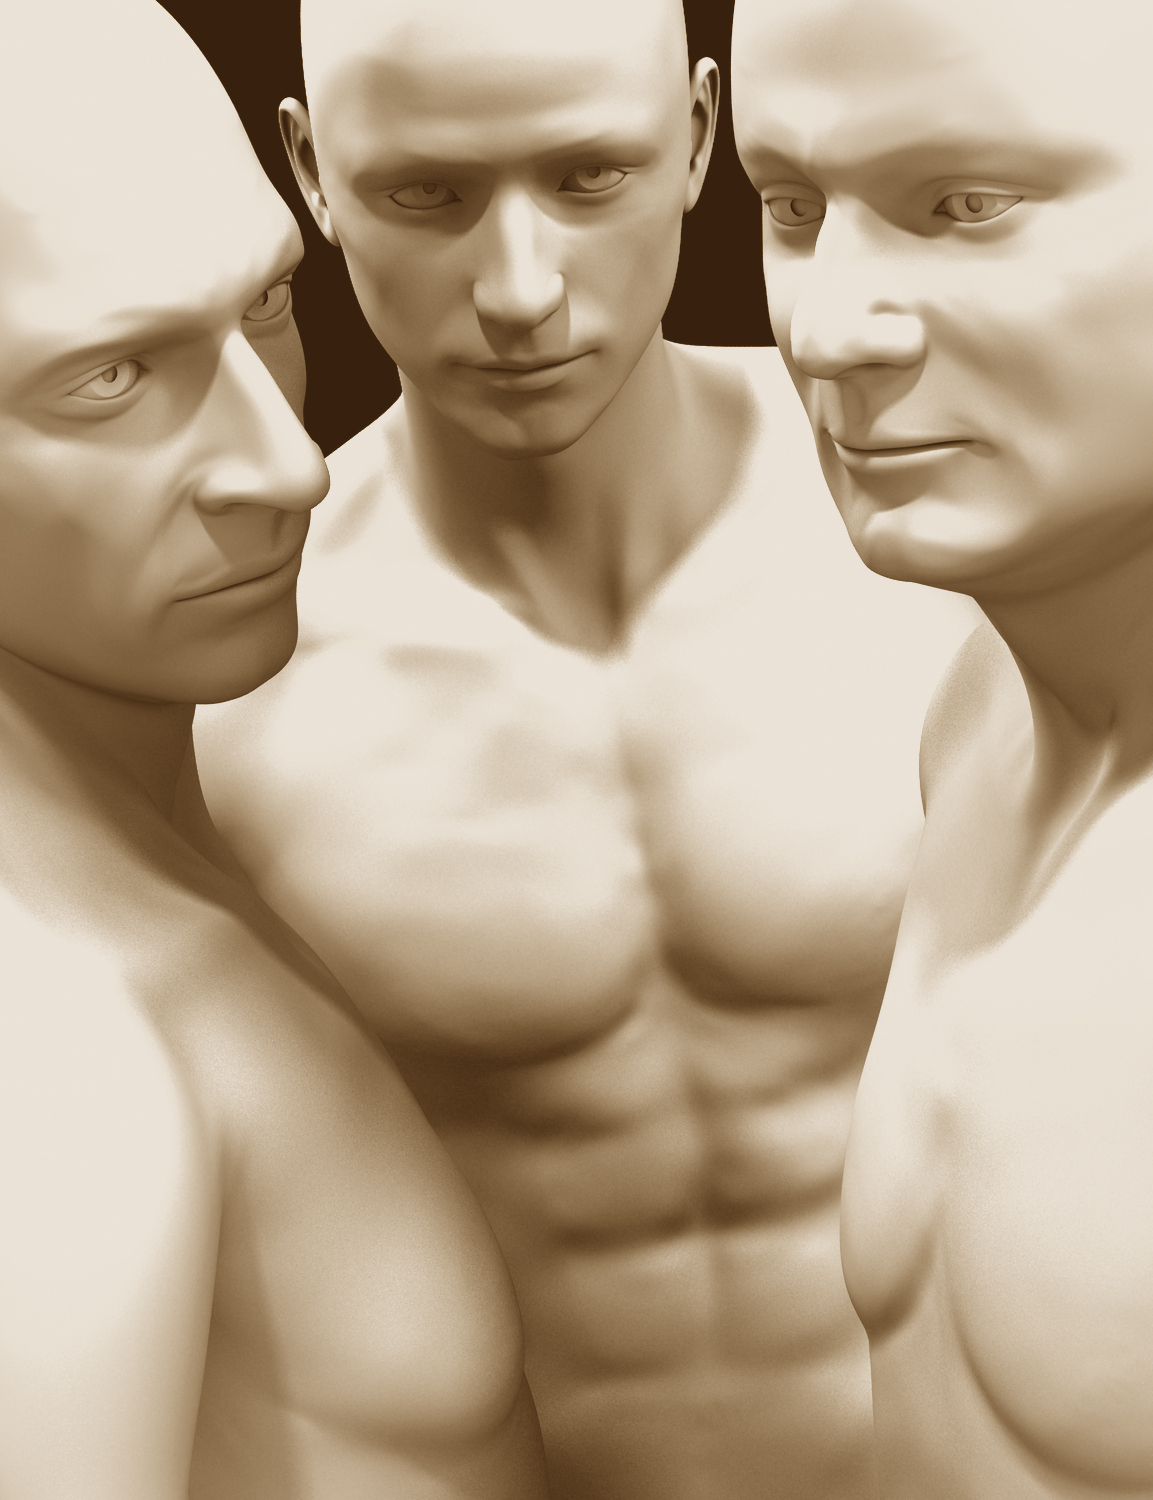 ExtraOrdinary Men for Genesis 2 Male(s) Volume 2 by: JoeQuick, 3D Models by Daz 3D